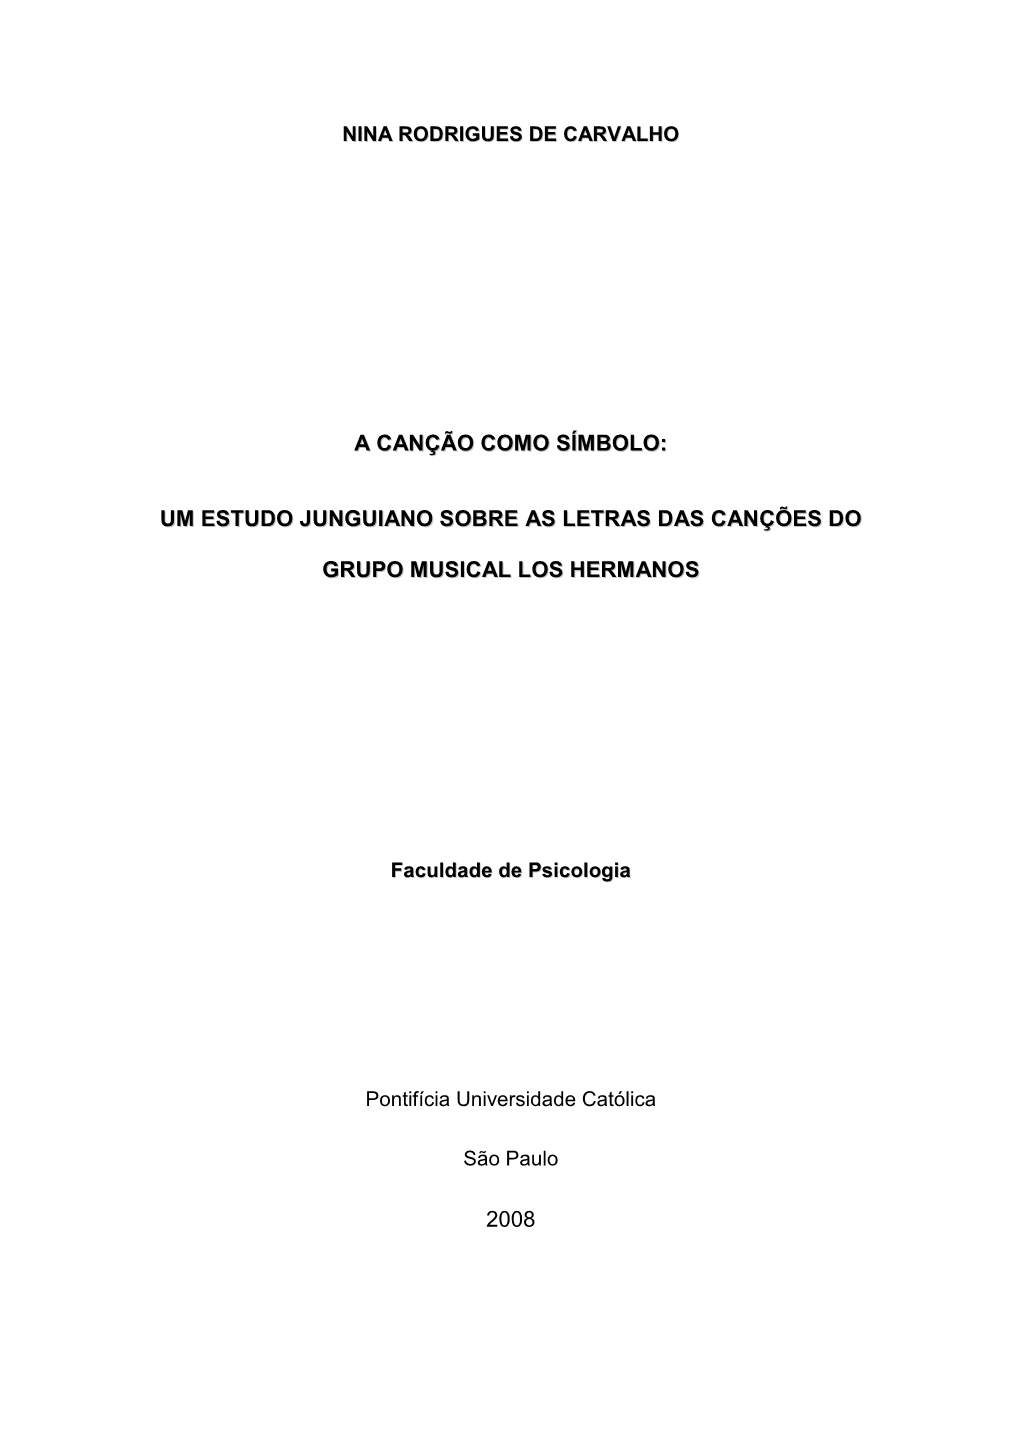 Um Estudo Junguiano Sobre As Letras Das Canções Do Grupo Musical Los Hermanos, 2008